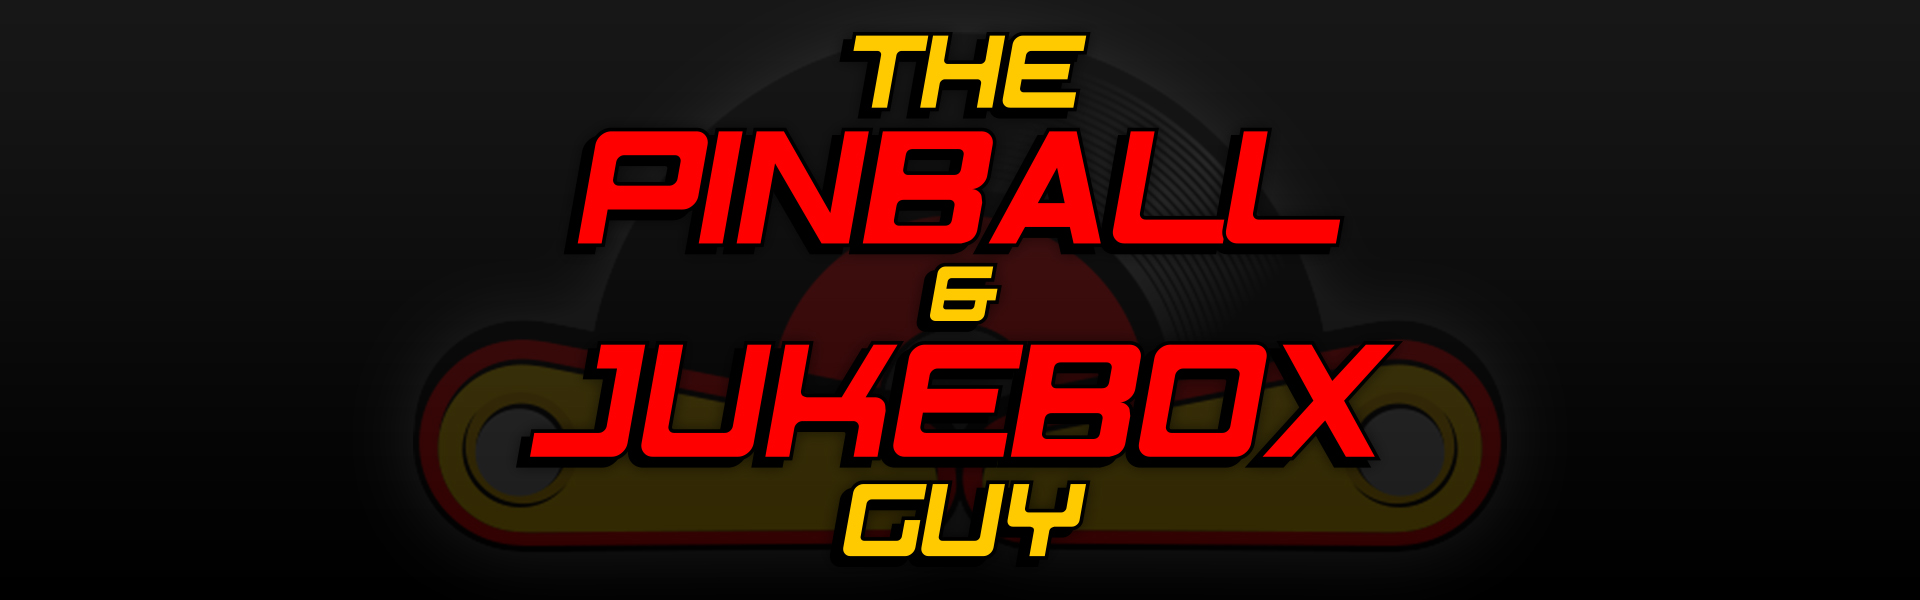 The Pinball & Jukebox Guy